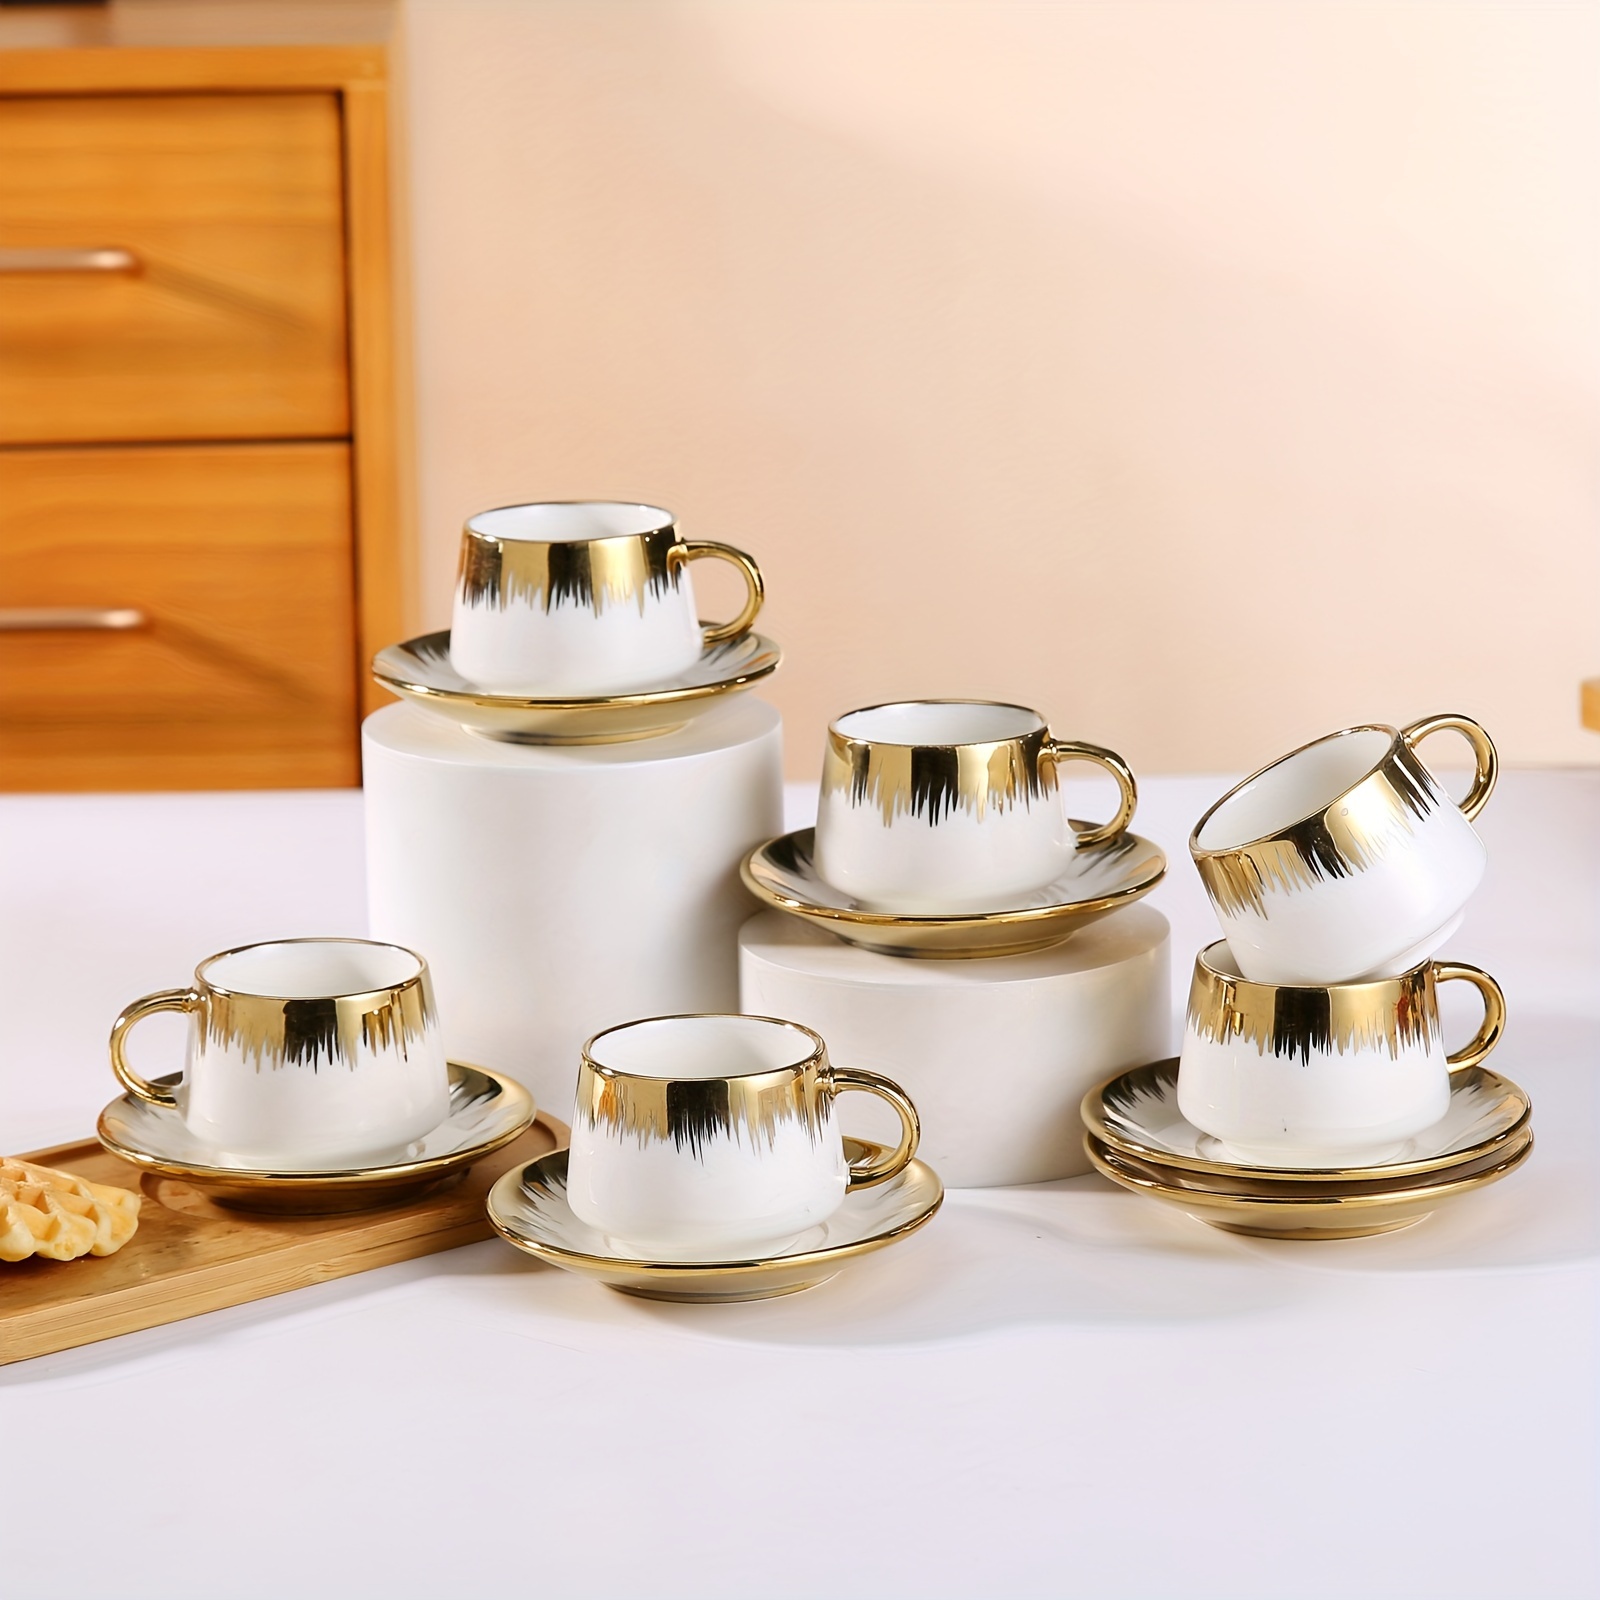 

Ensemble de tasses et soucoupes à espresso en céramique plaquée or de style turc - 6 tasses, 6 soucoupes, design européen élégant, ensemble de service de thé et café de qualité durable